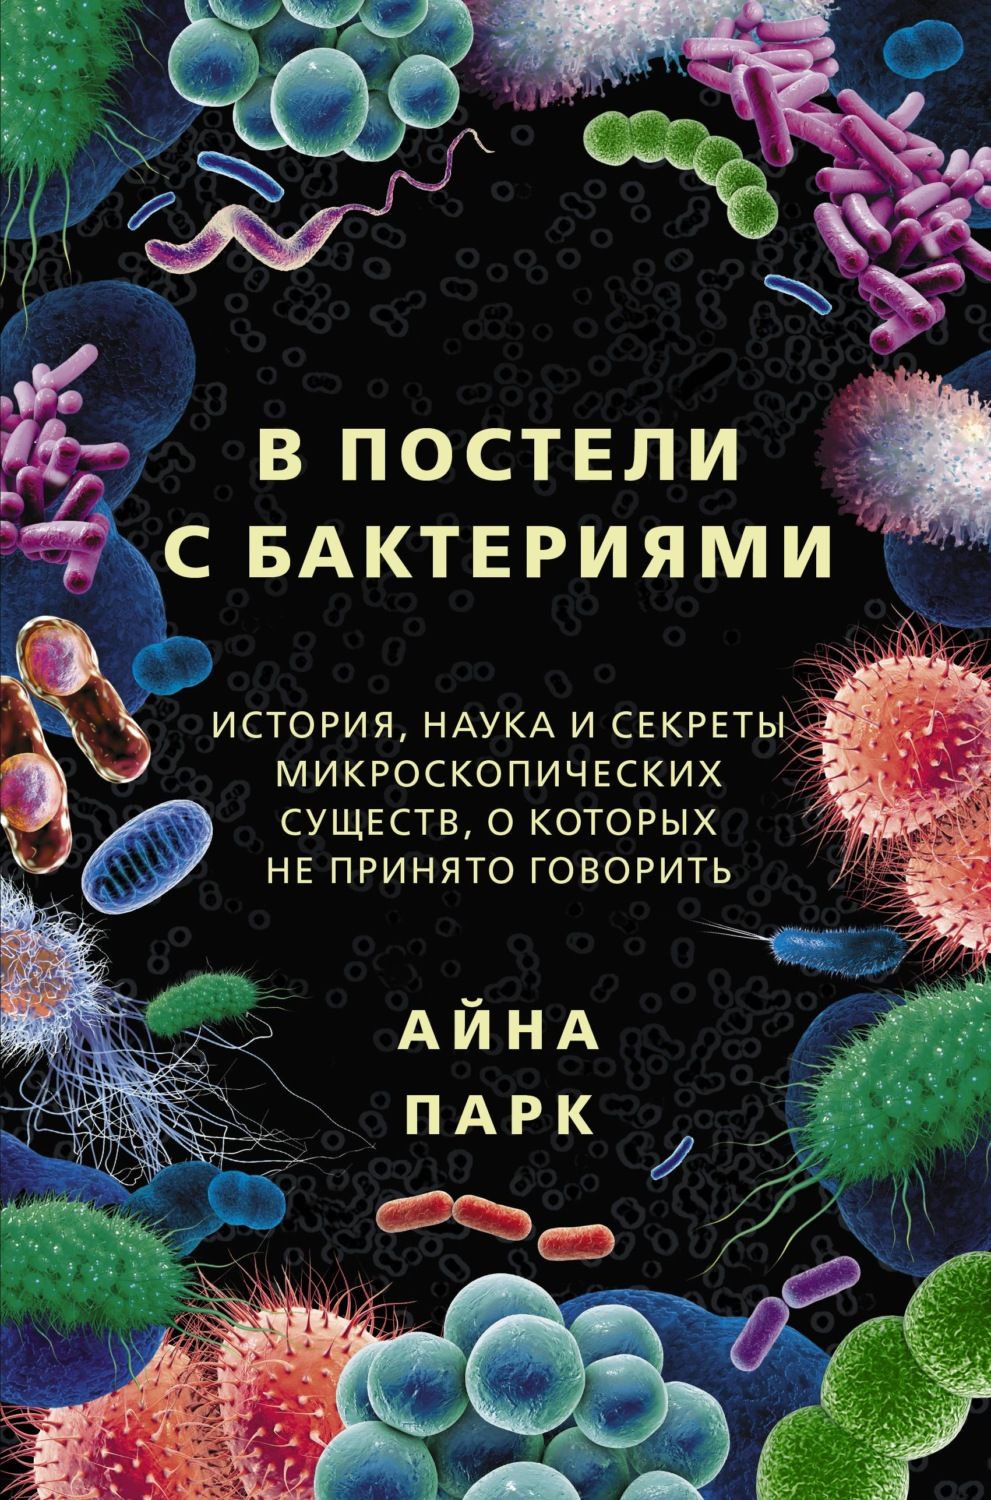 66845628-ayna-park-v-posteli-s-bakteriyami-istoriya-nauka-i-sekrety-mikroskopichesk.jpg